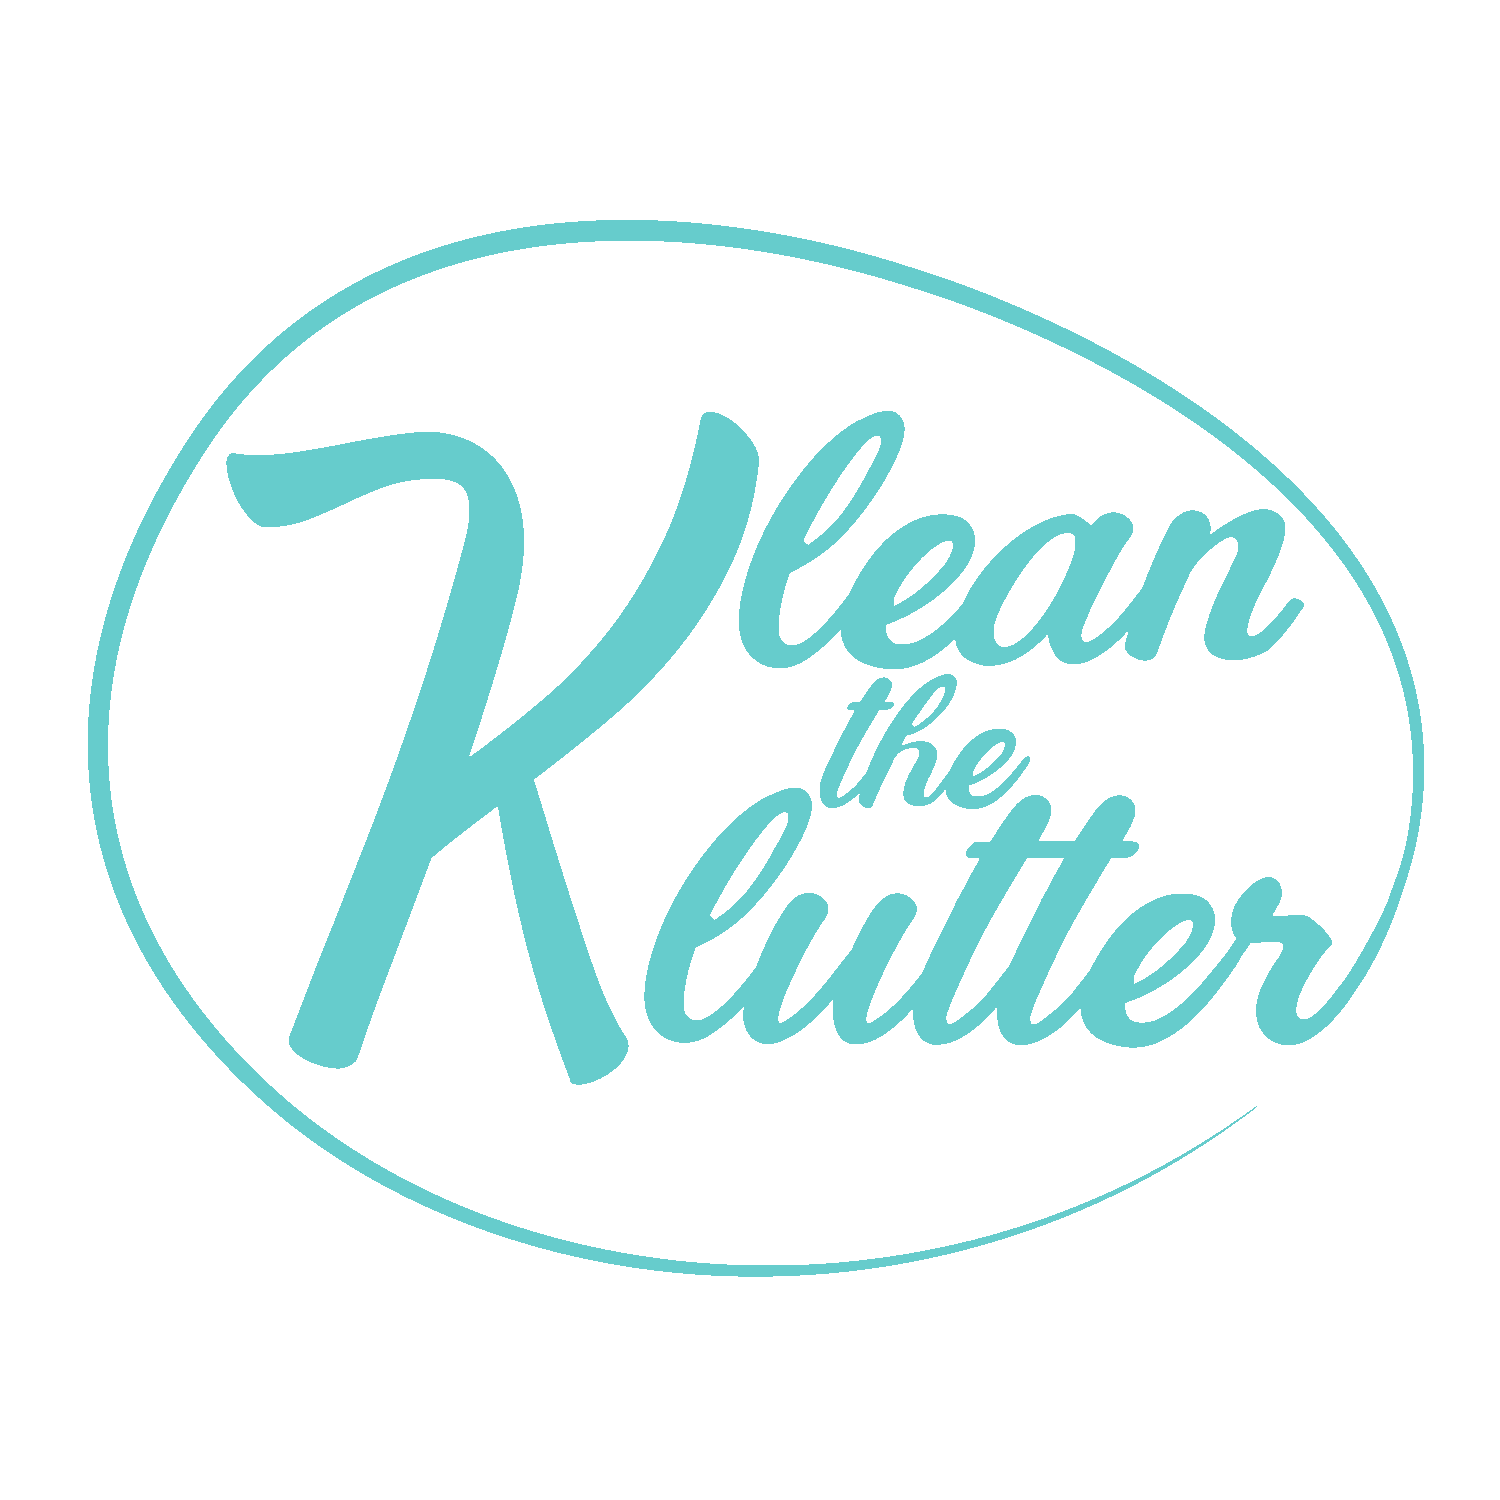 Klean the Klutter